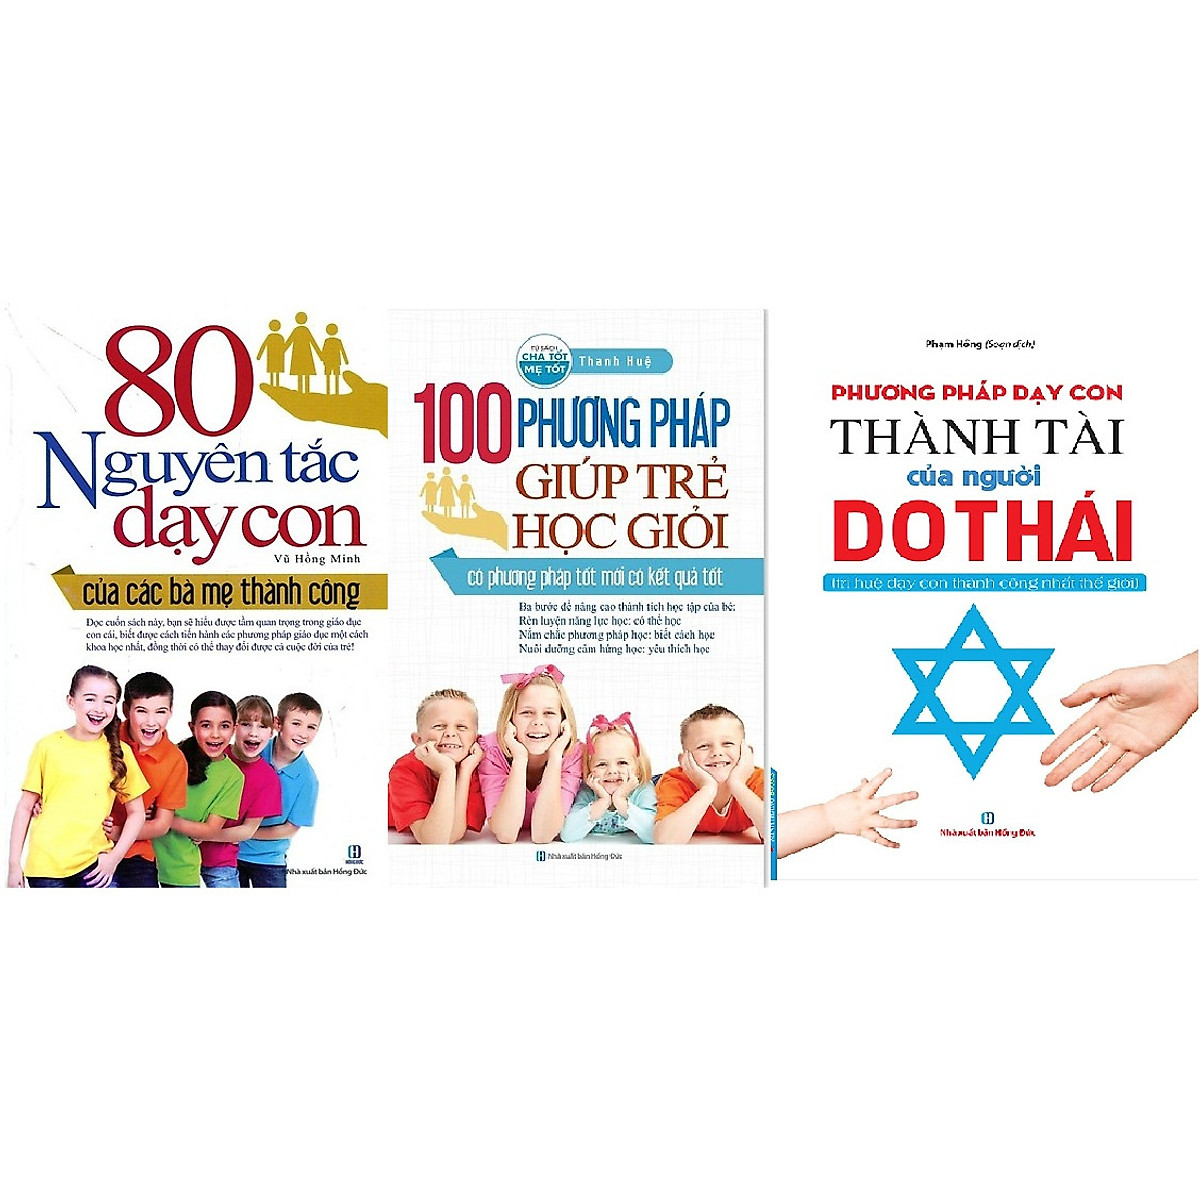 3 cuốn sách phương pháp dạy con: 80 Nguyên Tắc Dạy Con + 100 Phương Pháp Giúp Trẻ Học Giỏi + Phương Pháp Dạy Con Thành Tài Của Người Do Thái